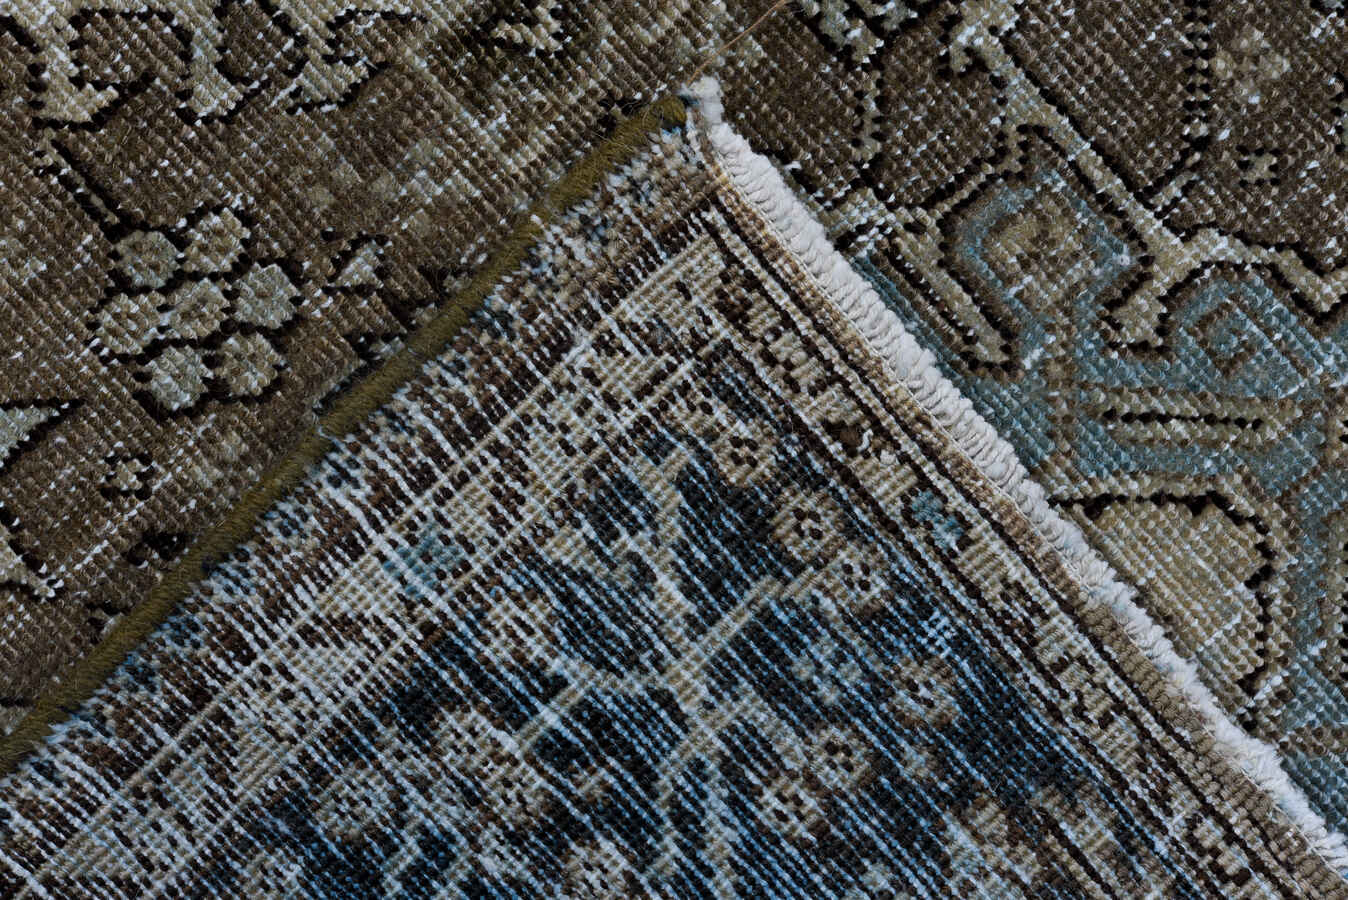 Vintage karadja Carpet - # 57374